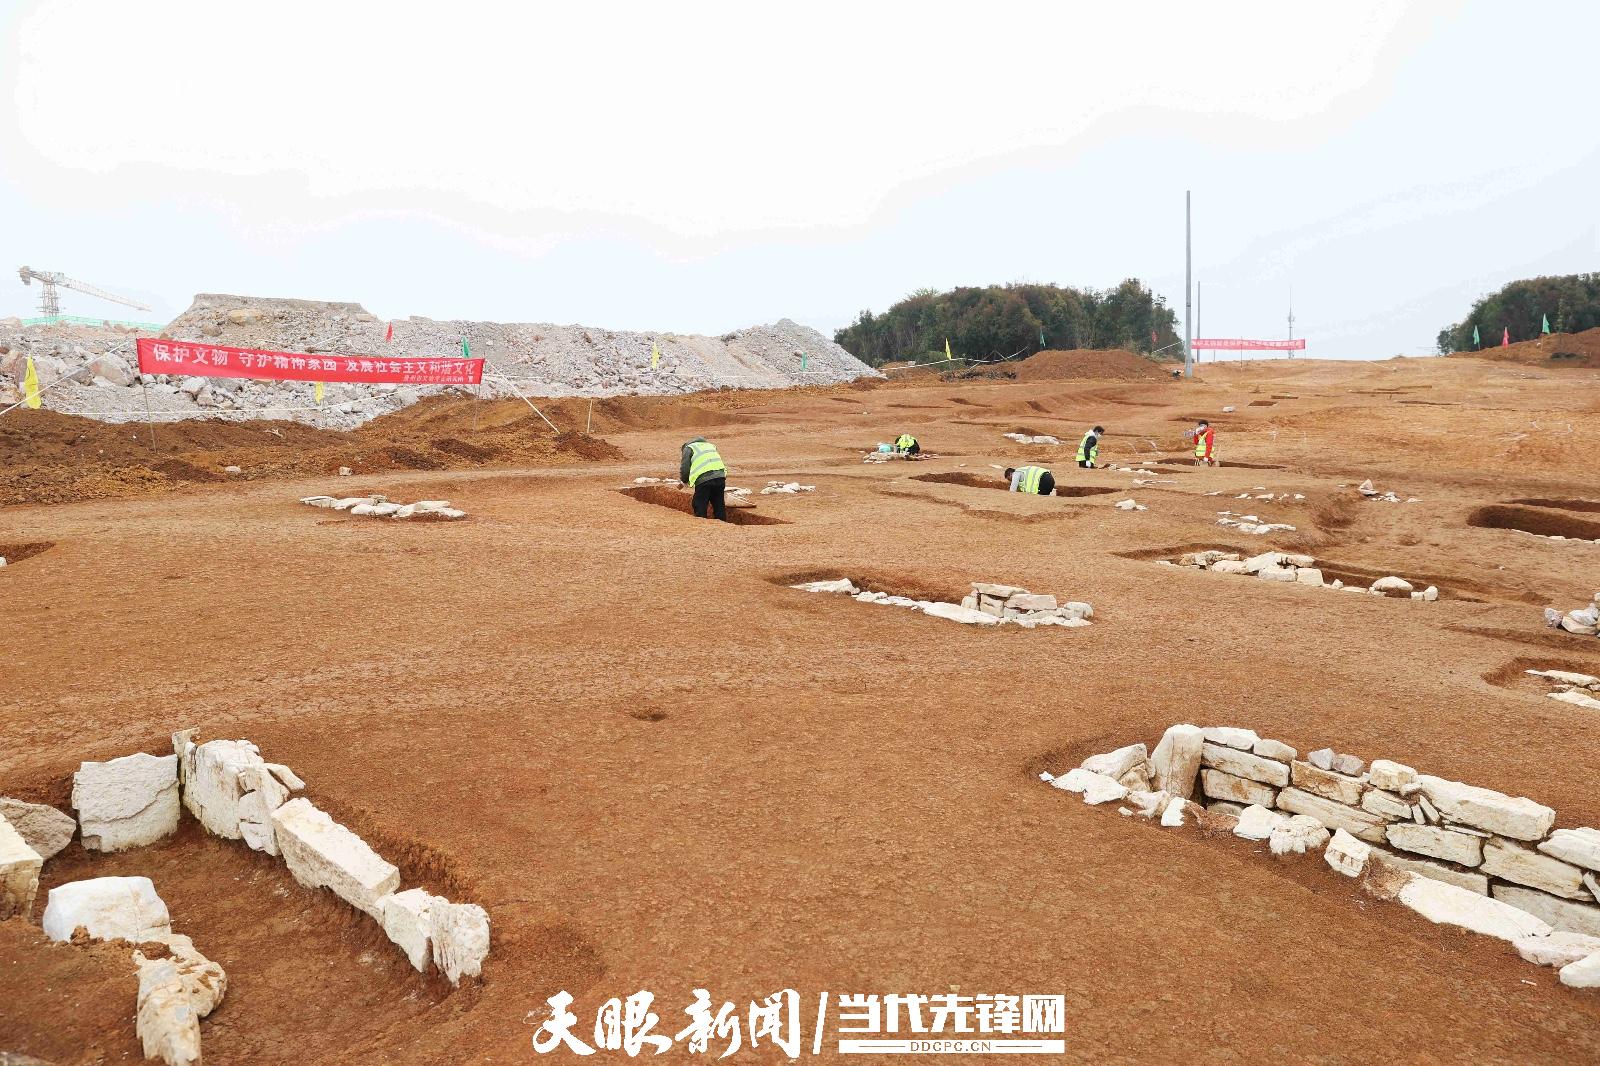 贵安新区大松山墓群是贵州考古历史上第8次入选“全国十大考古新发现”的遗址，考古发掘现场已被保护起来。图为考古发掘现场。张凯 摄.jpg